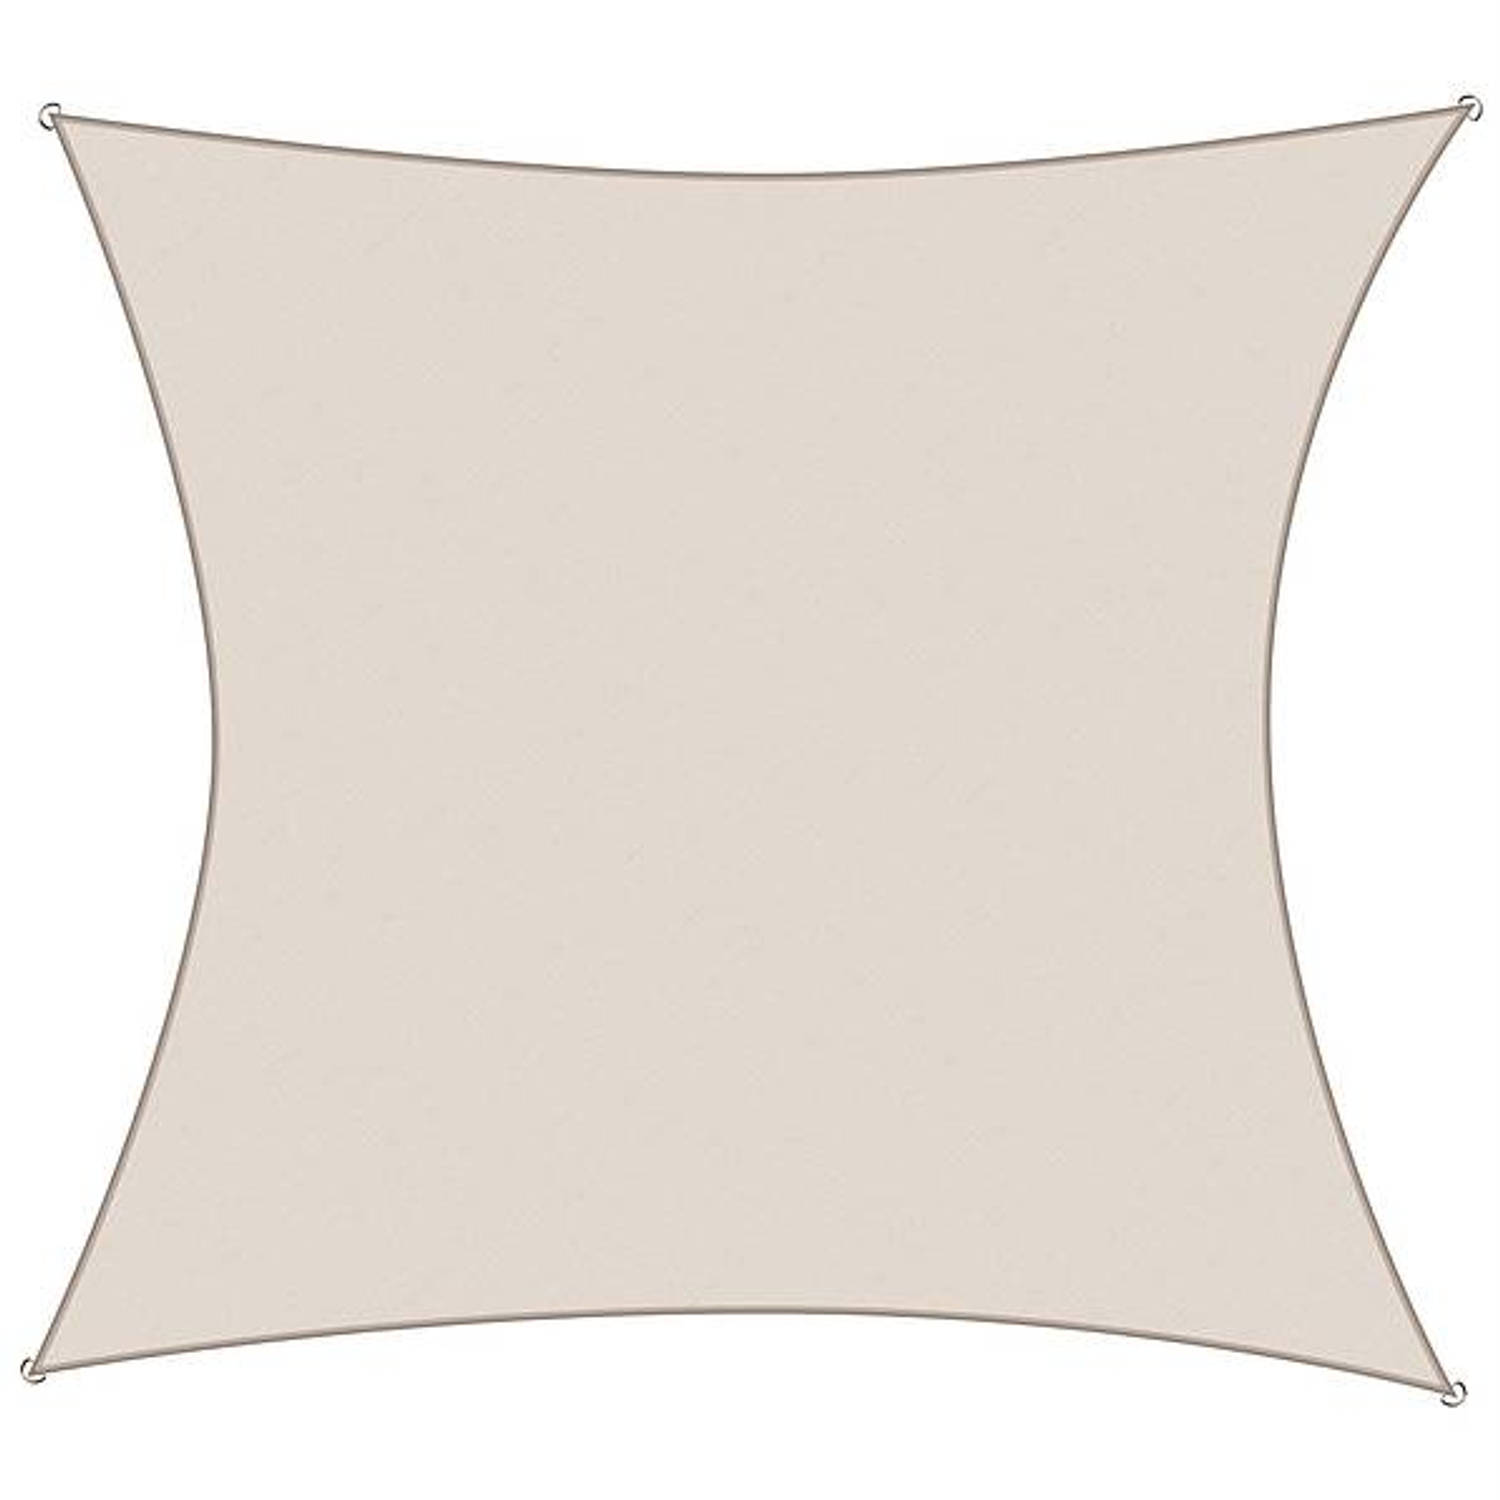 Koopman International Schaduwdoek Vierkant Cremekleur 3x3m